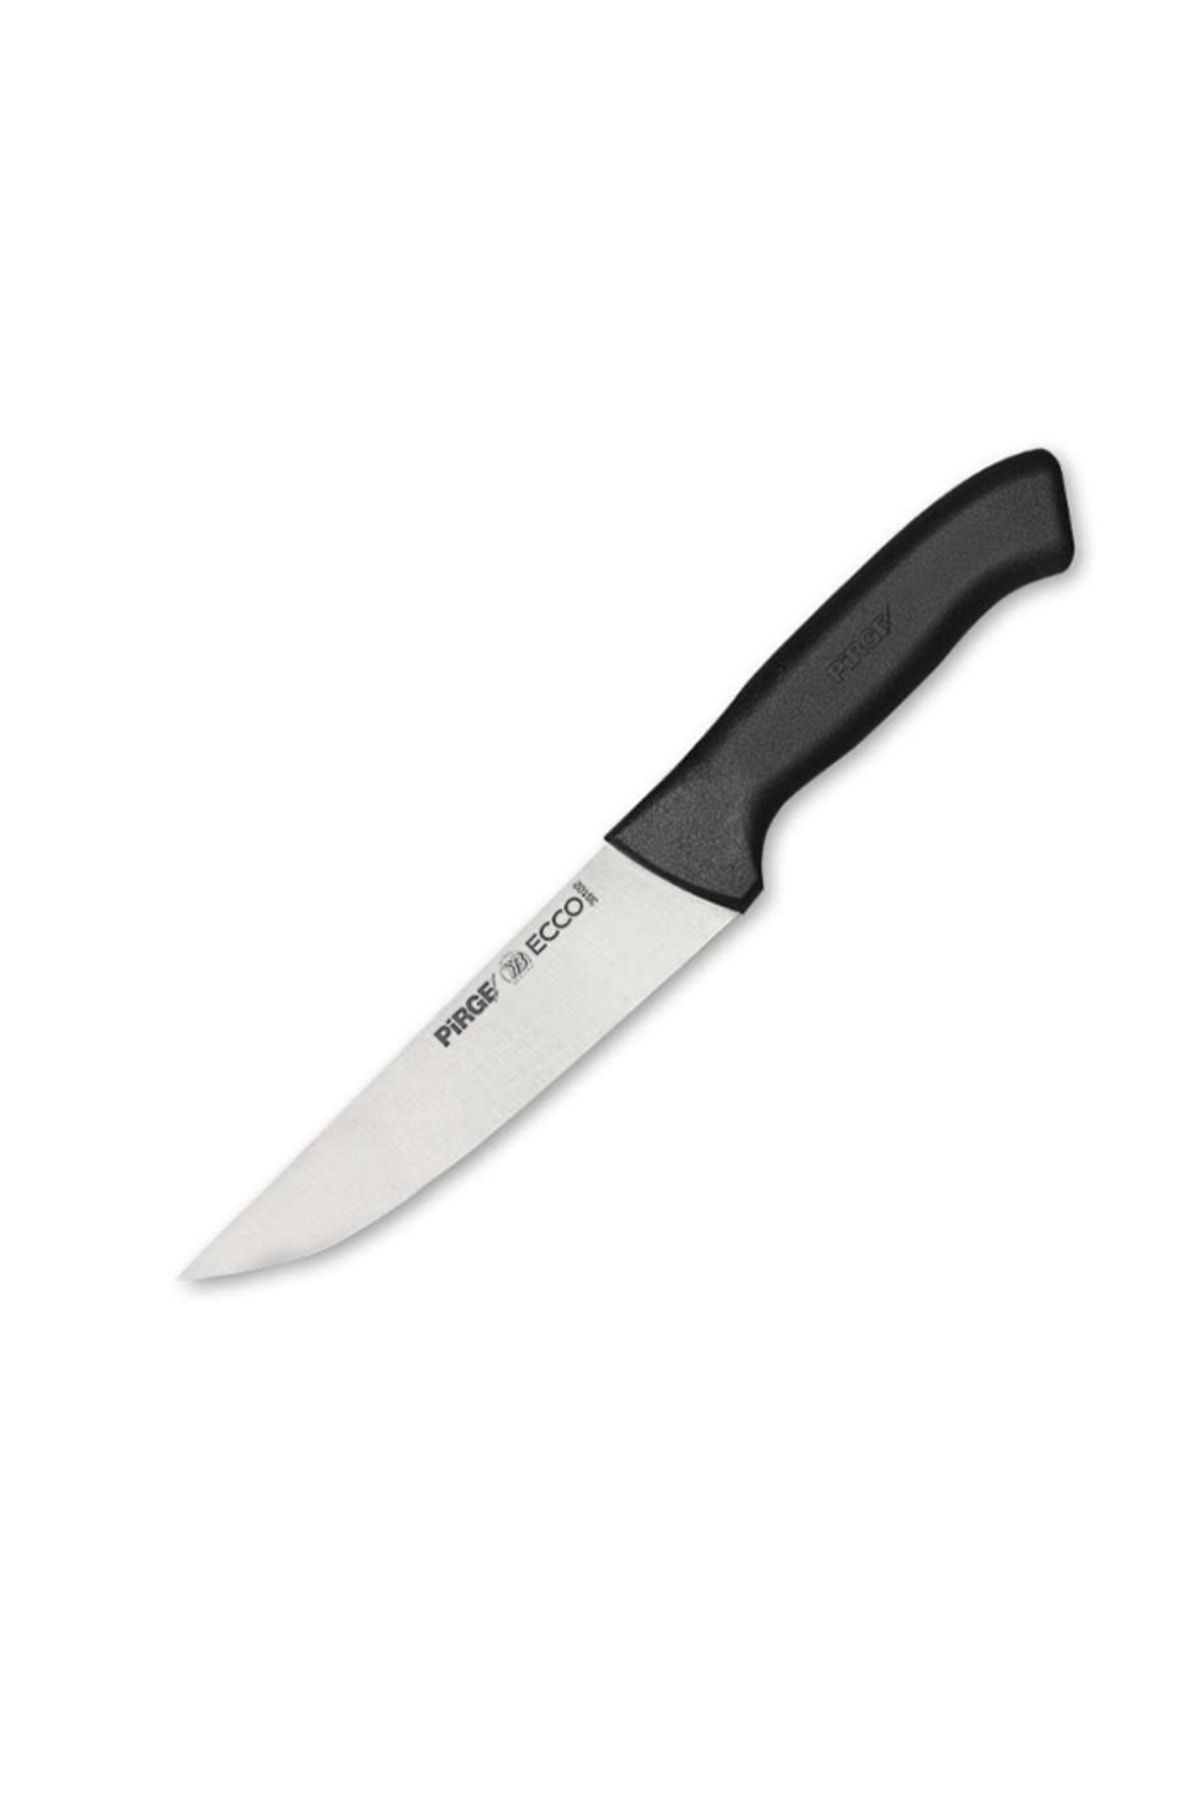 Pirge Ecco Et Bıçağı - Siyah - 16,5 Cm